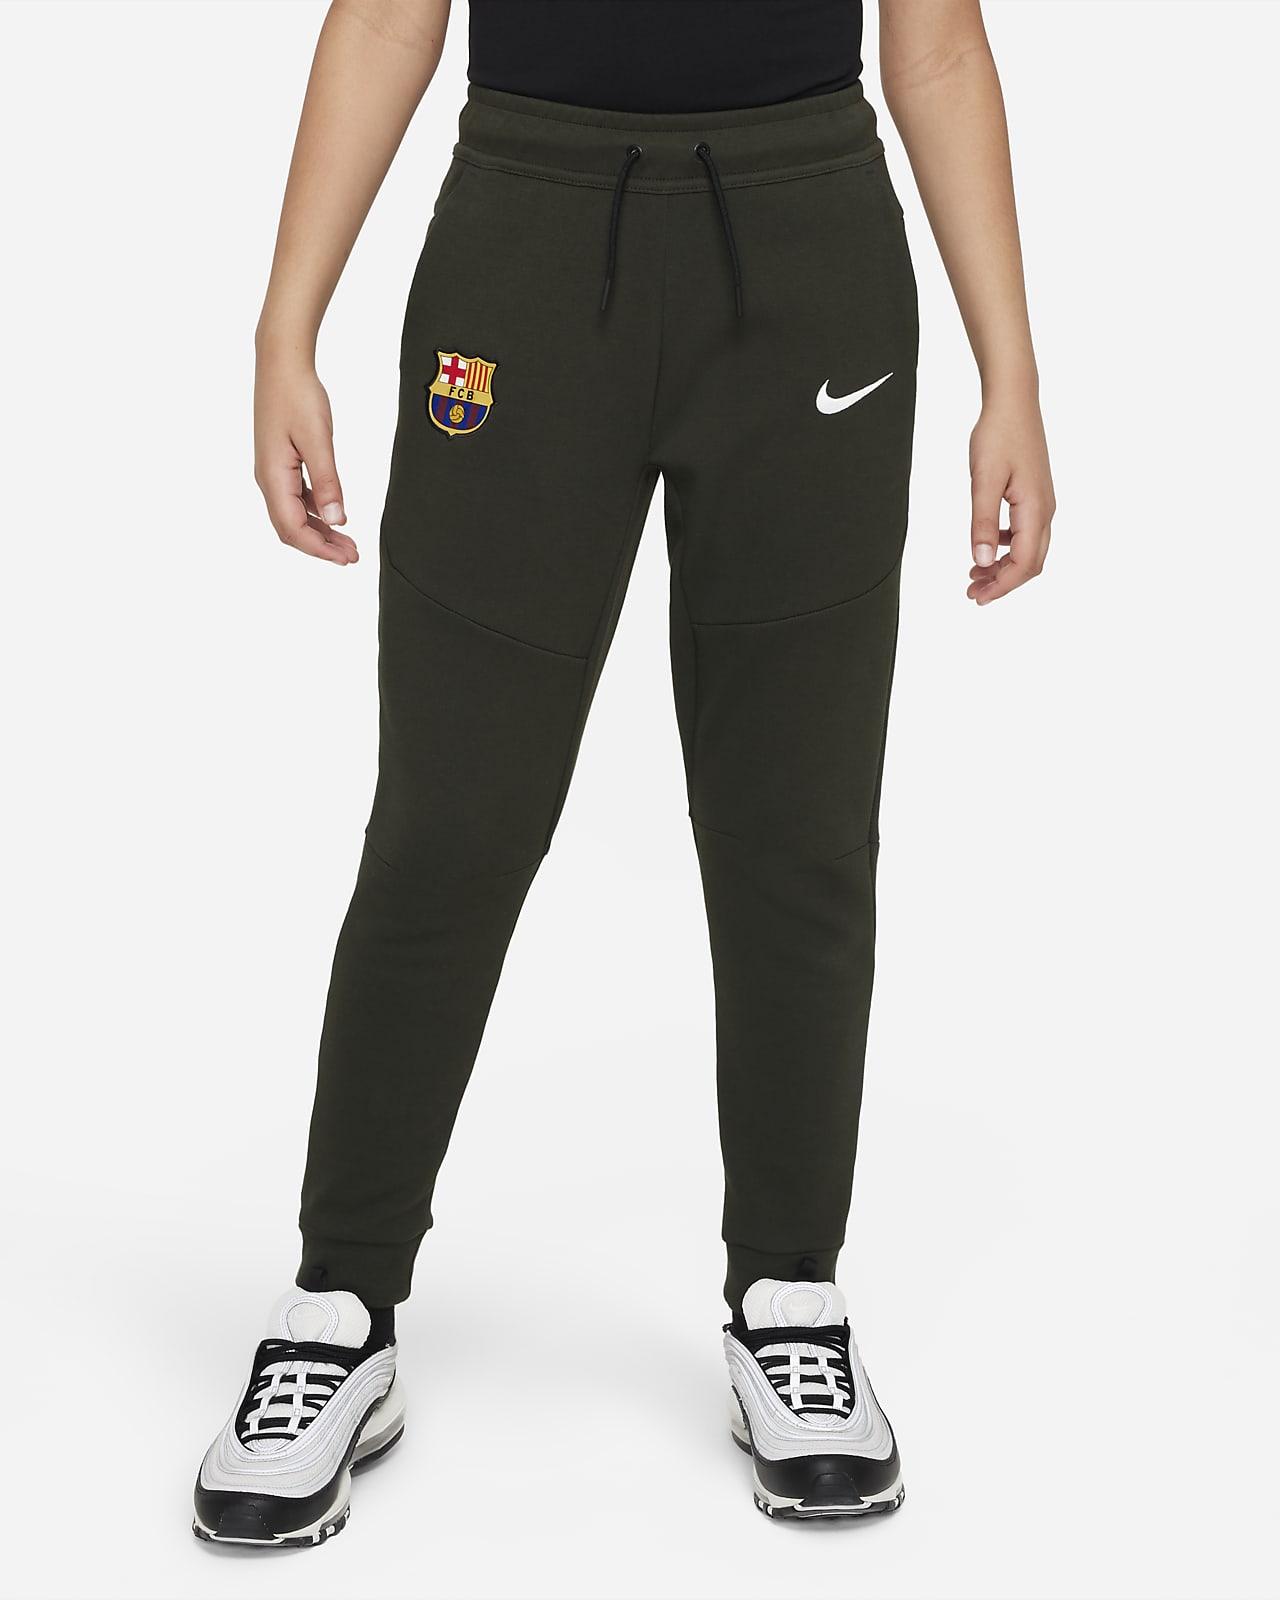 zeevruchten Mooie jurk Bondgenoot F.C. Barcelona Tech Fleece Older Kids' (Boys') Nike Trousers. Nike LU